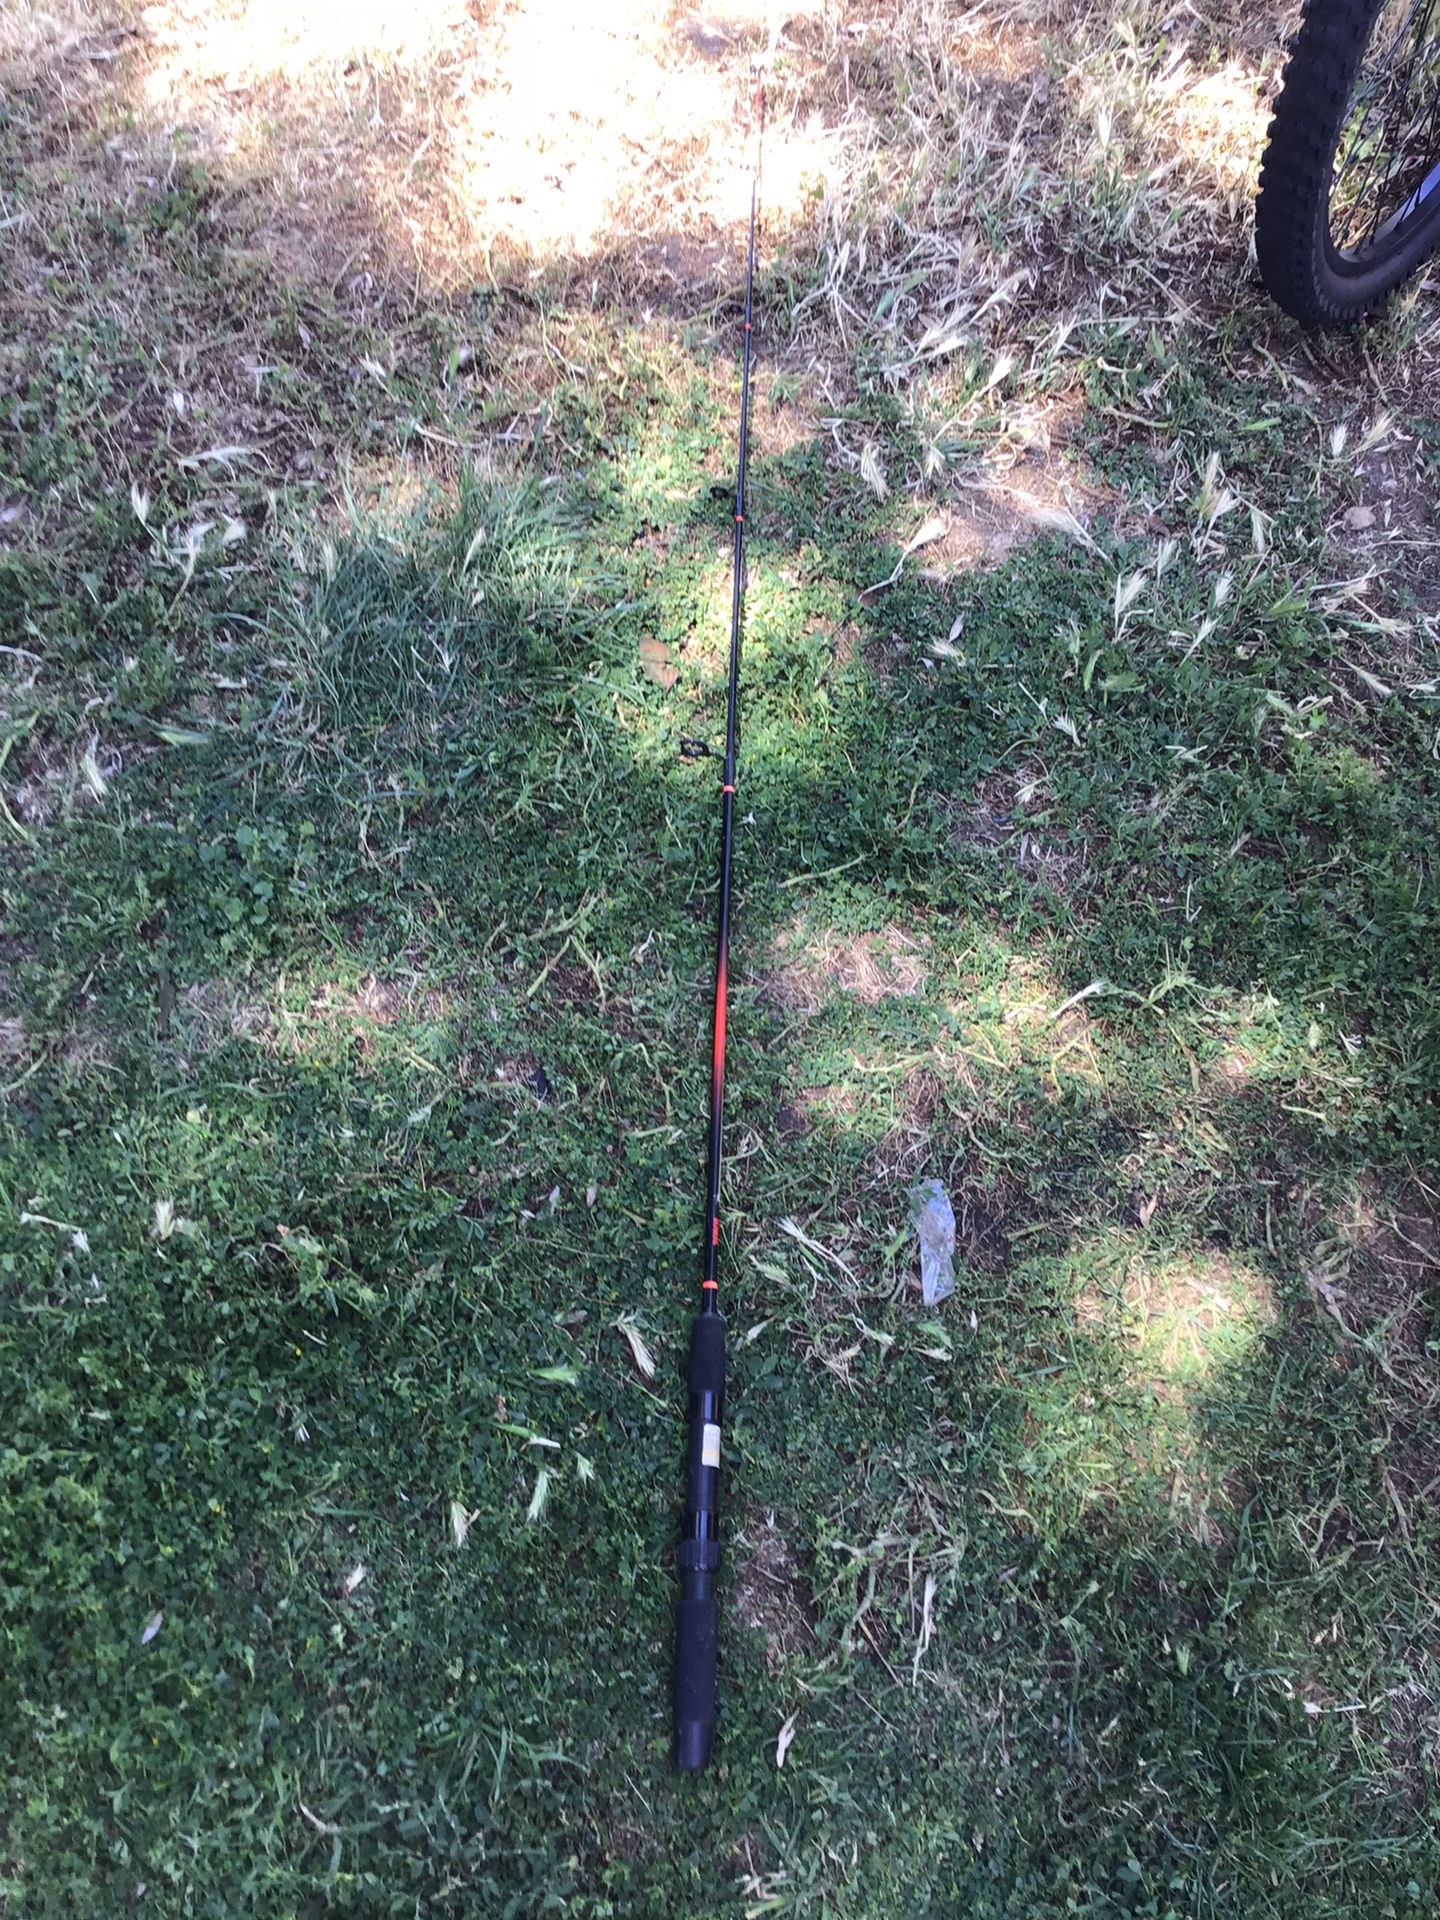 Fishing pole stick